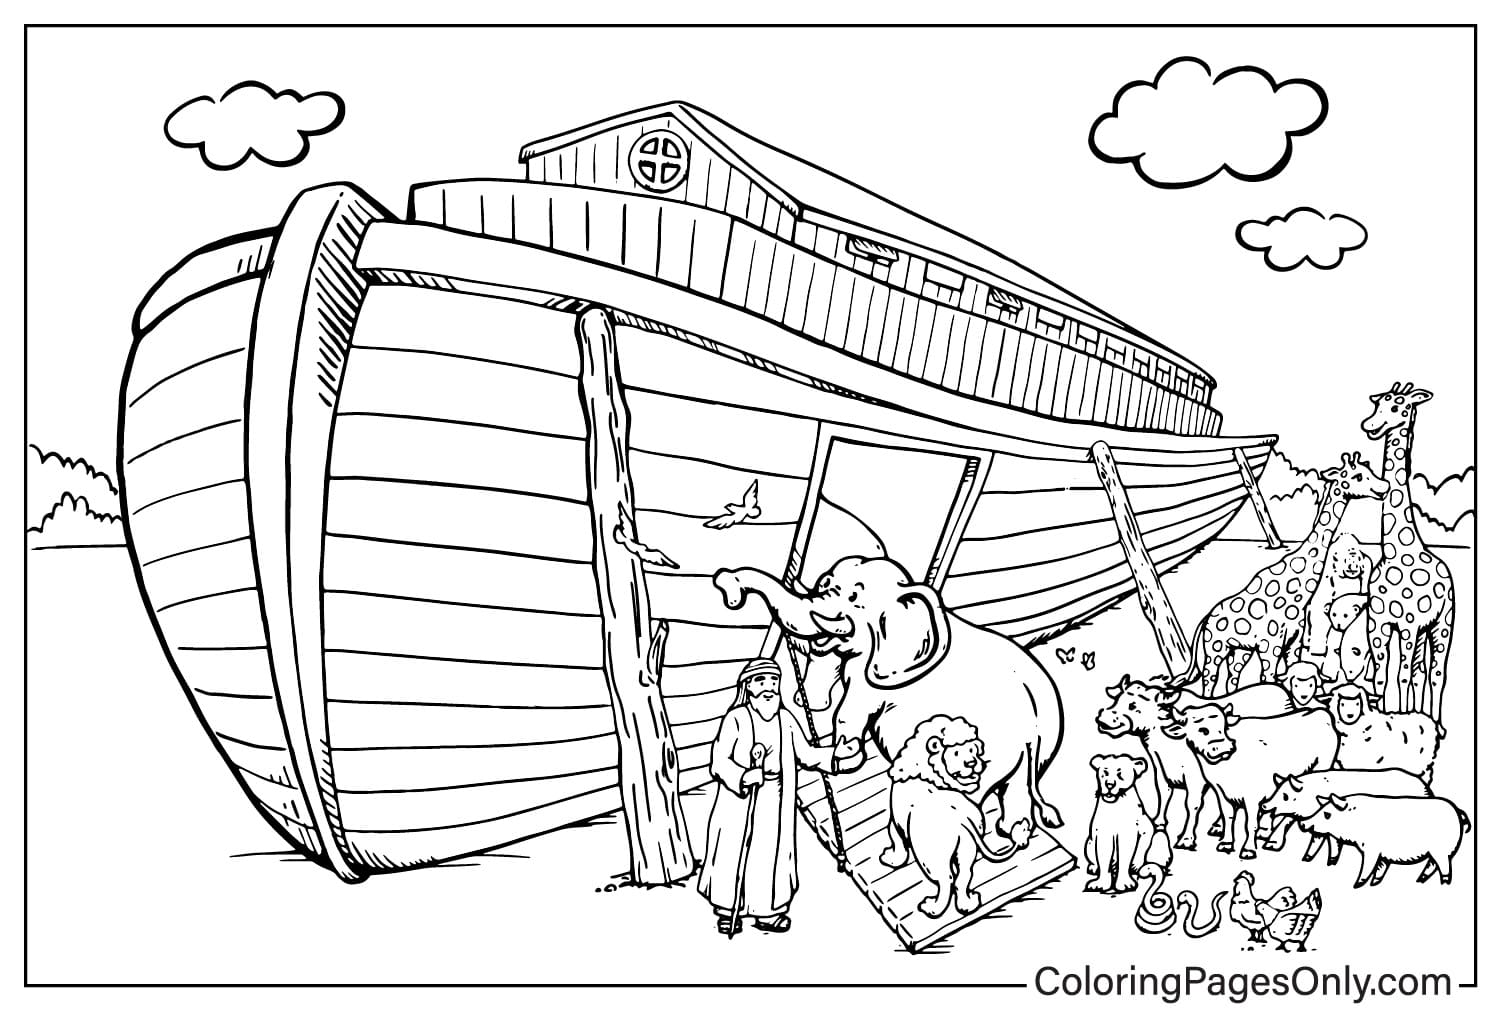 Página para colorear de Noé con animales del Arca de Noé